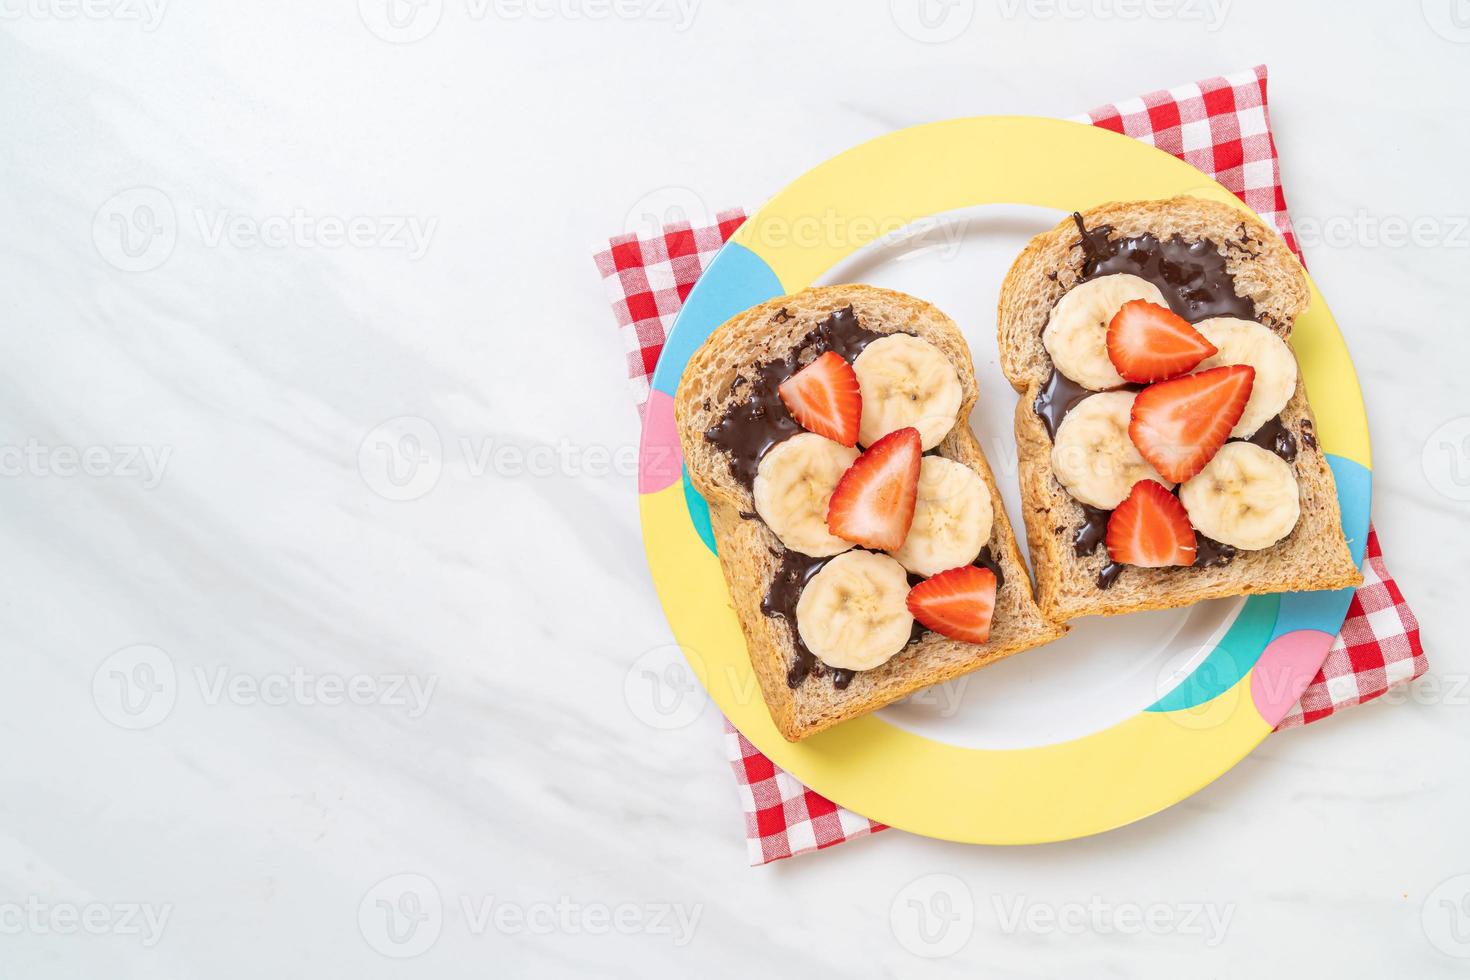 Vollkornbrot geröstet mit frischer Banane, Erdbeere und Schokolade zum Frühstück foto